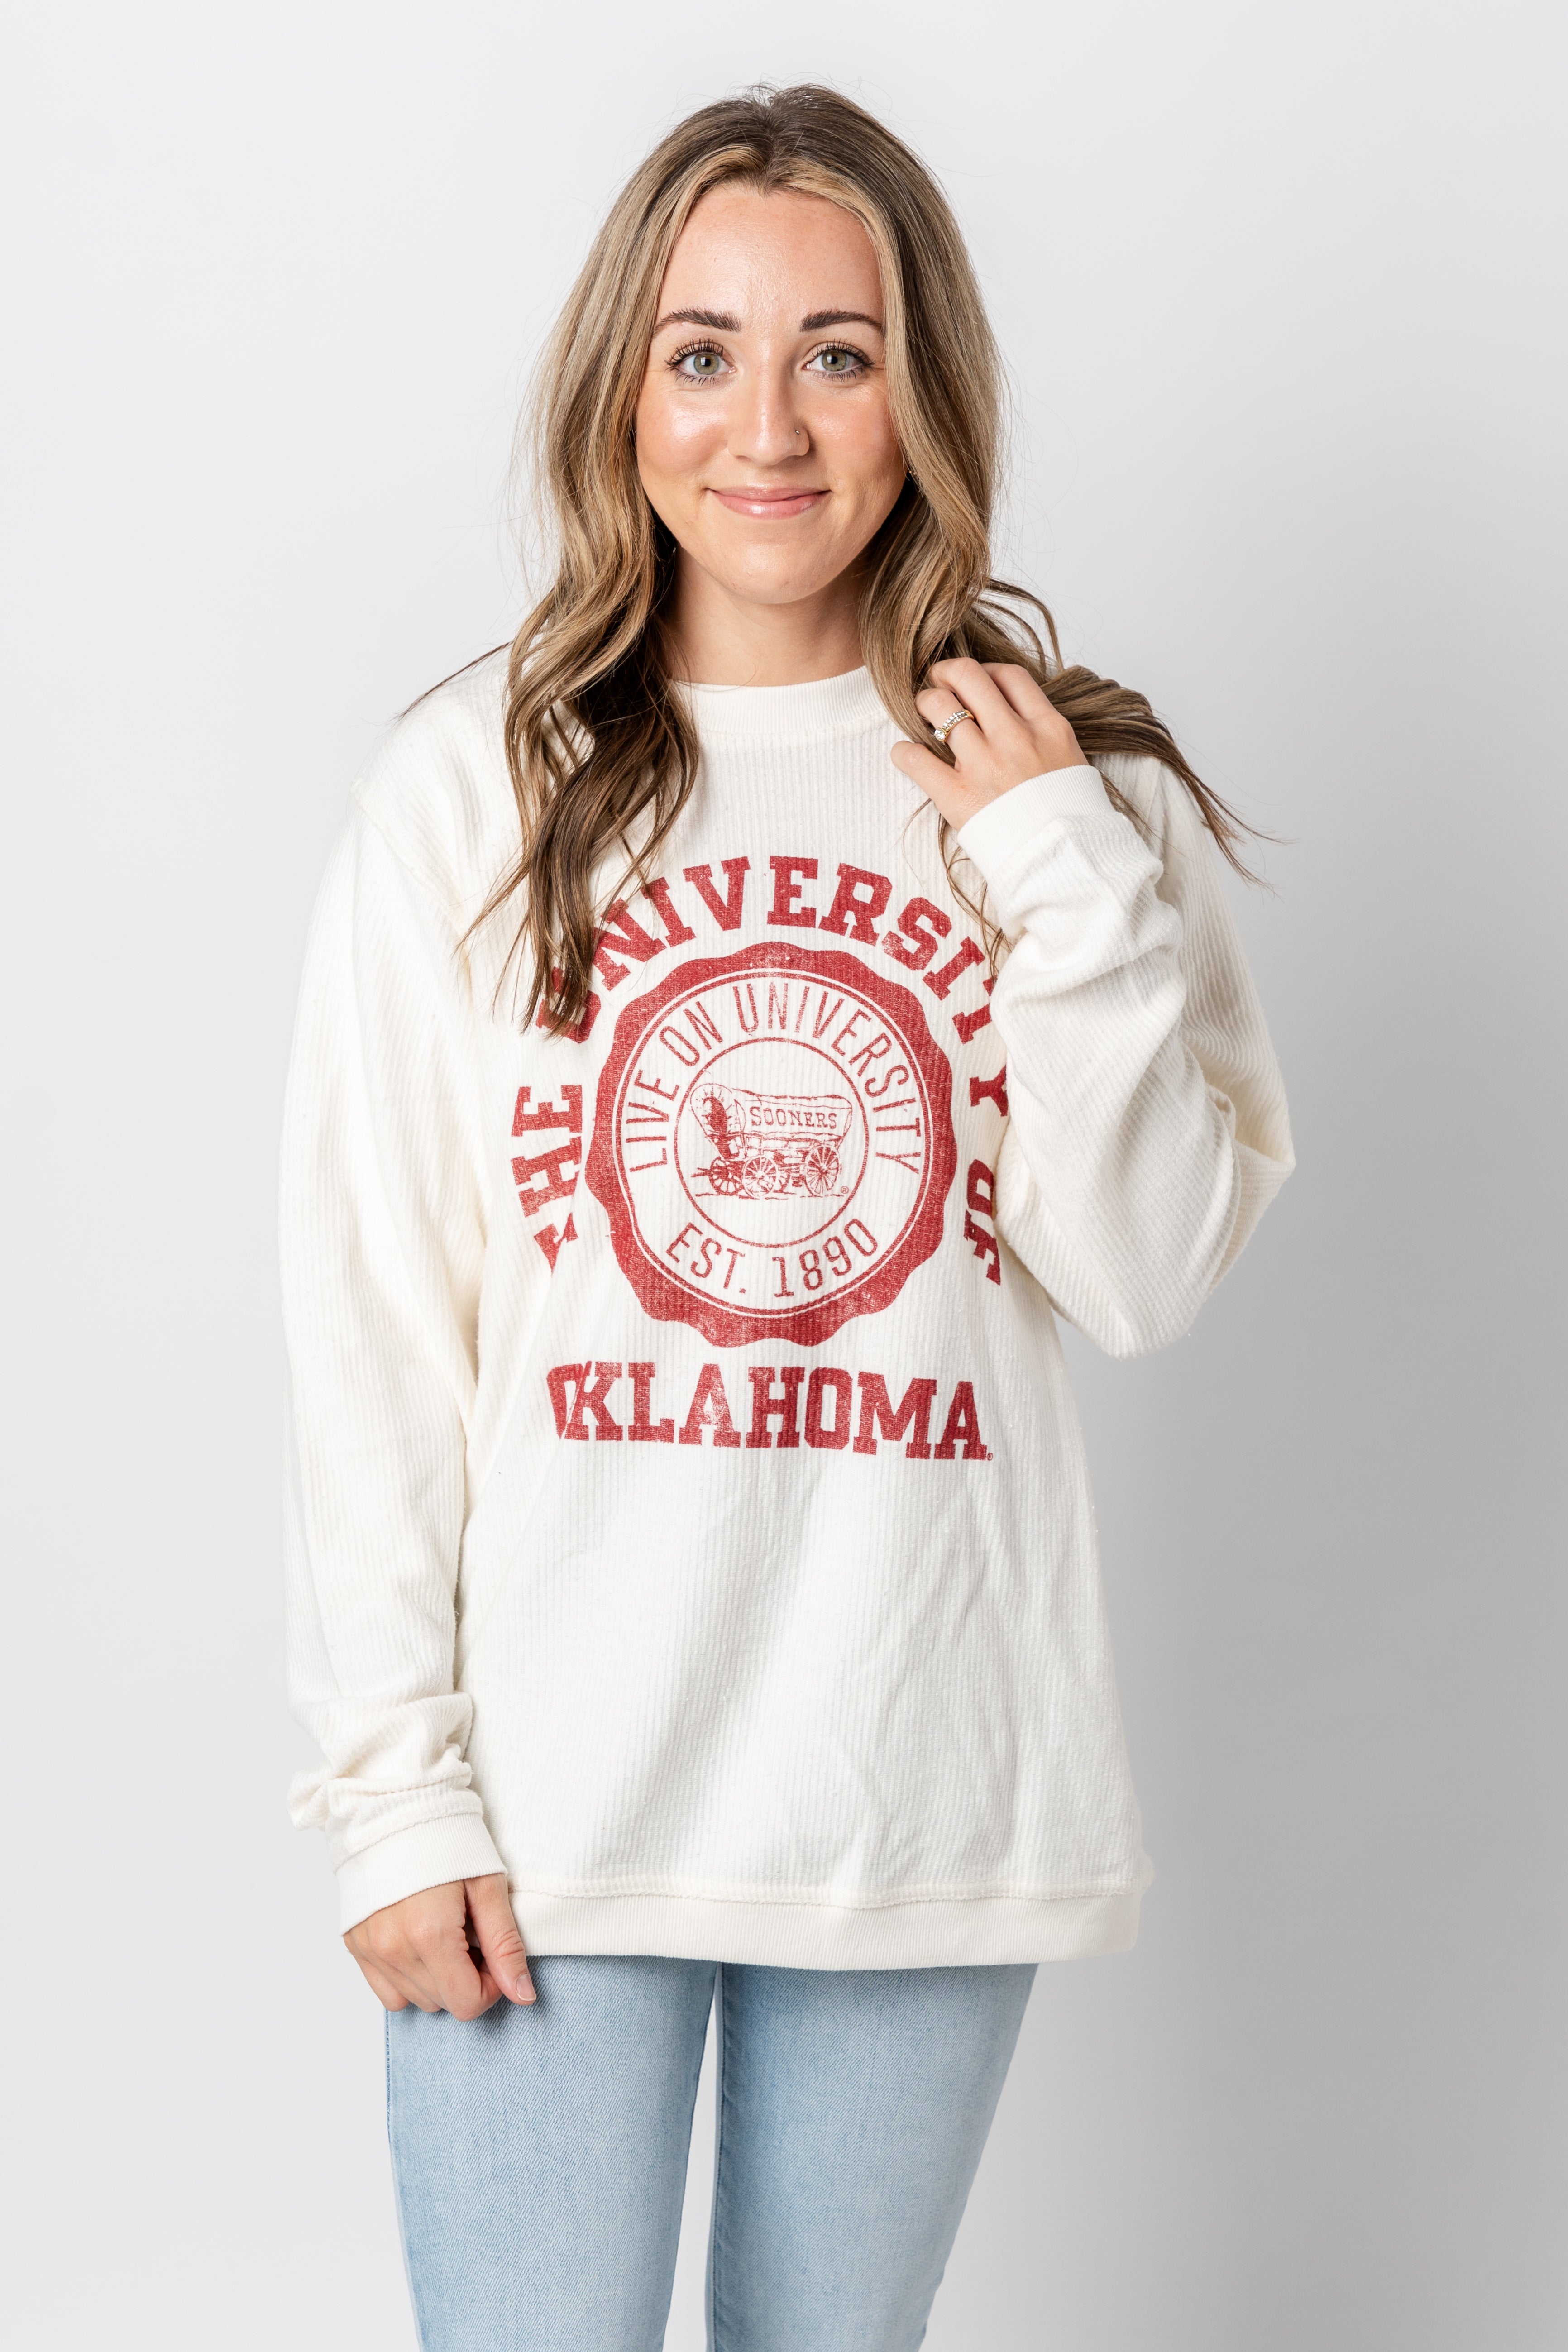 Vintage Oklahoma Football Sweatshirt, Preppy Oklahoma School